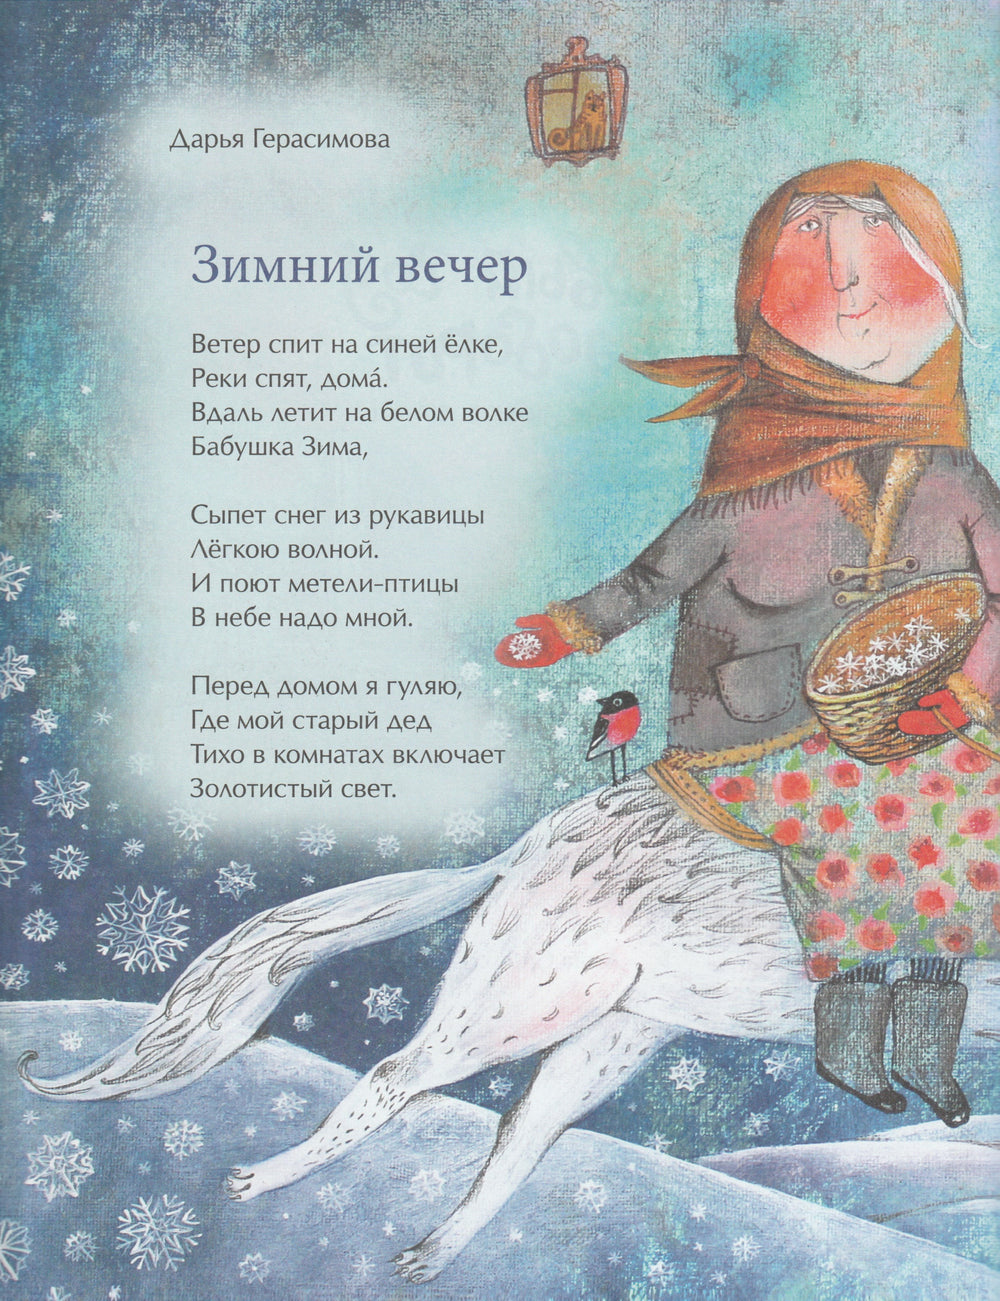 Новый год наоборот и другие зимние стихи-Герасимова Д.-Настя и Никита-Lookomorie